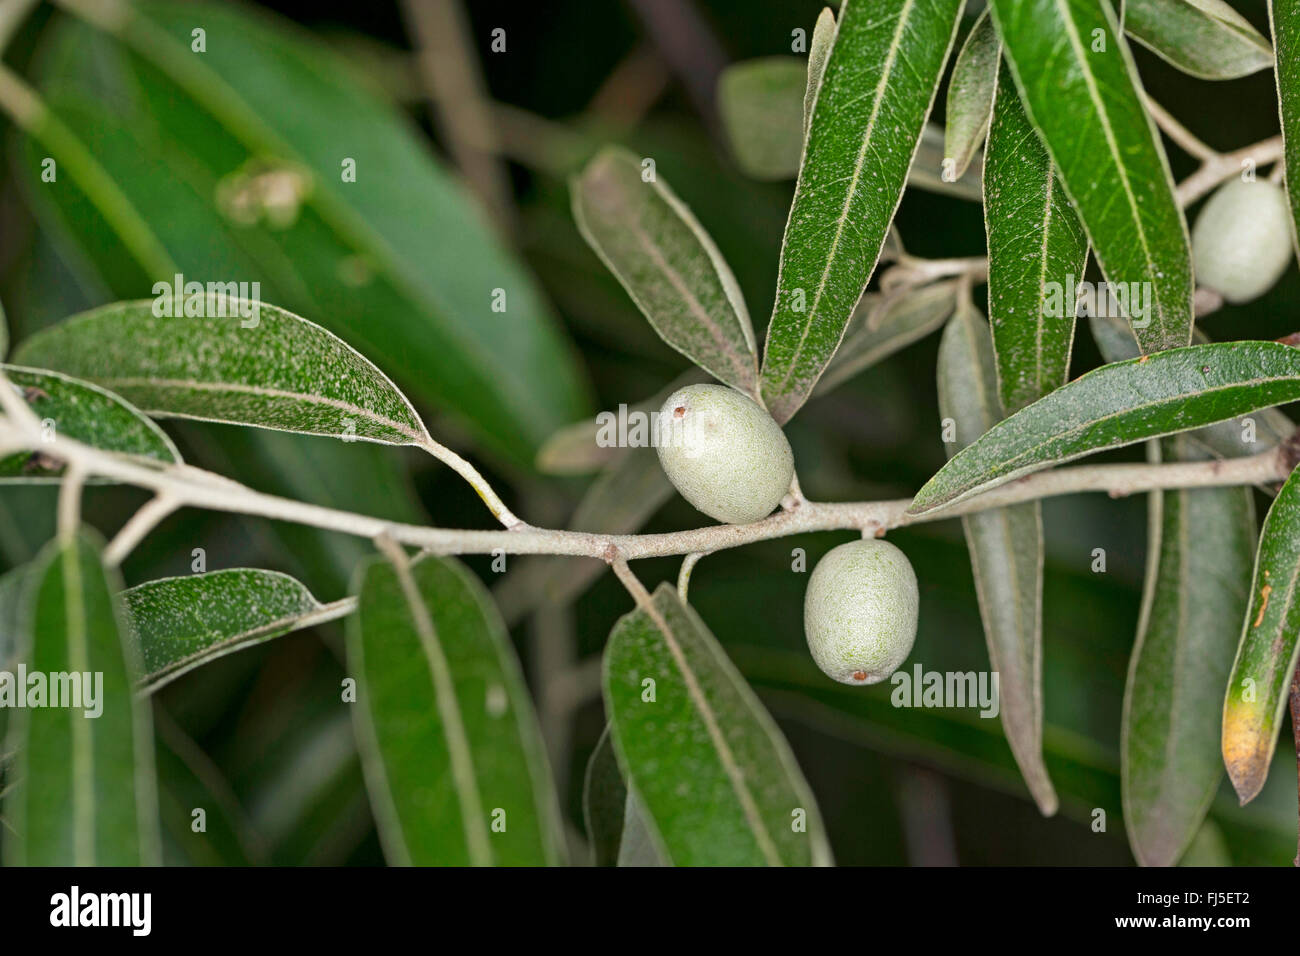 Federación de oliva, oleaster, trebizond fecha (Elaeagnus angustifolia), frutas en una sucursal Foto de stock